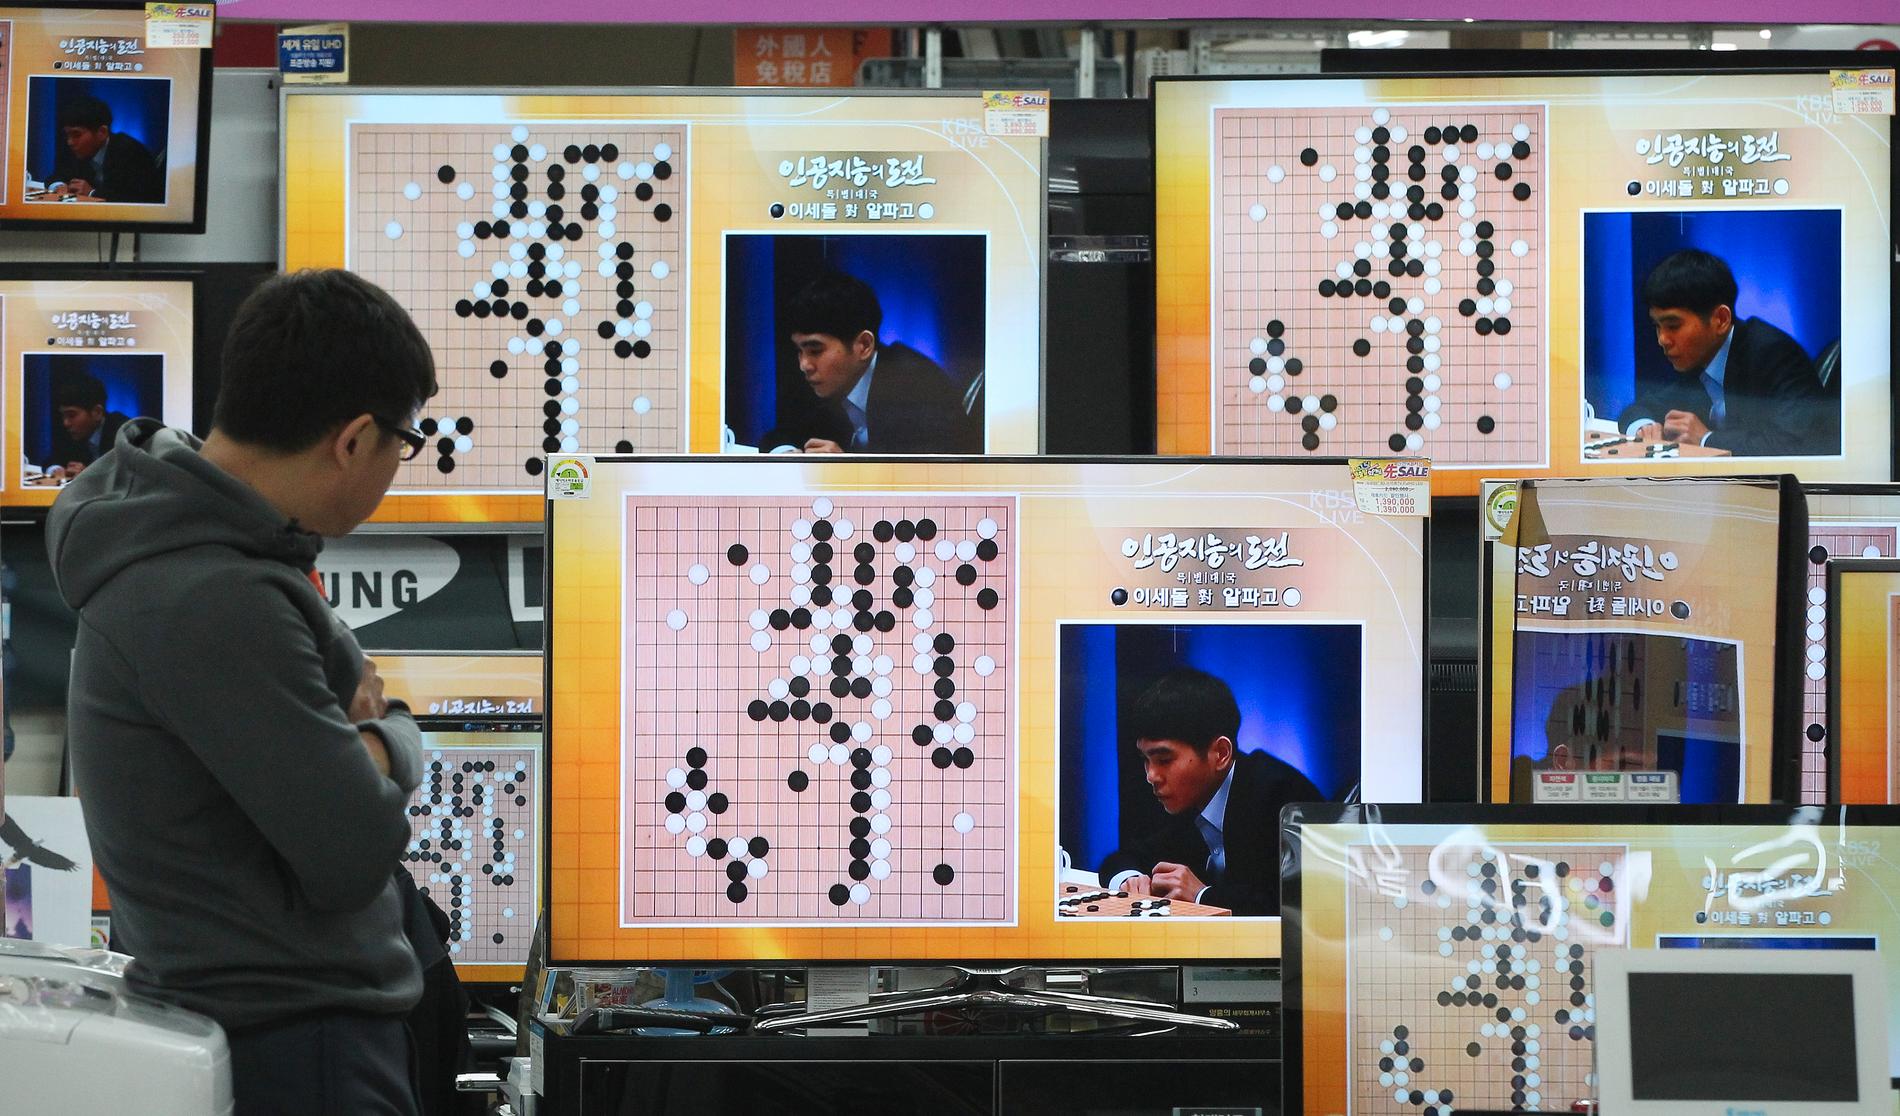 Skärmarna visar den sydkoreanska professionella Go-spelaren Lee Sedol under en match mot AlphaGo 2016. Lee förlorade matchen. 